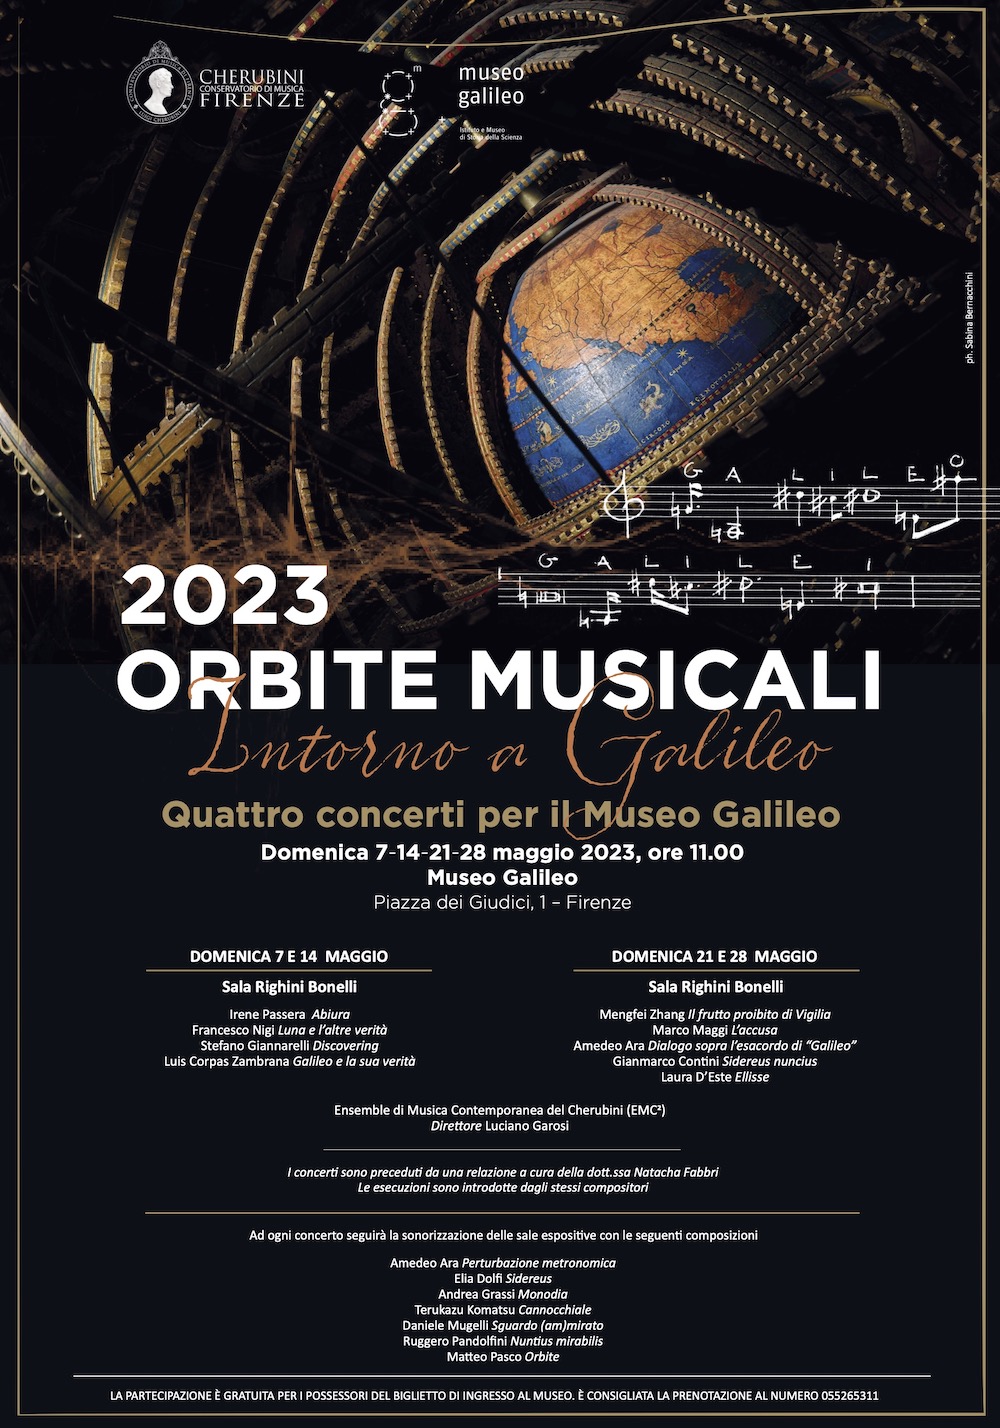 Locandina Orbite Musicali 2023 - Museo Galileo 